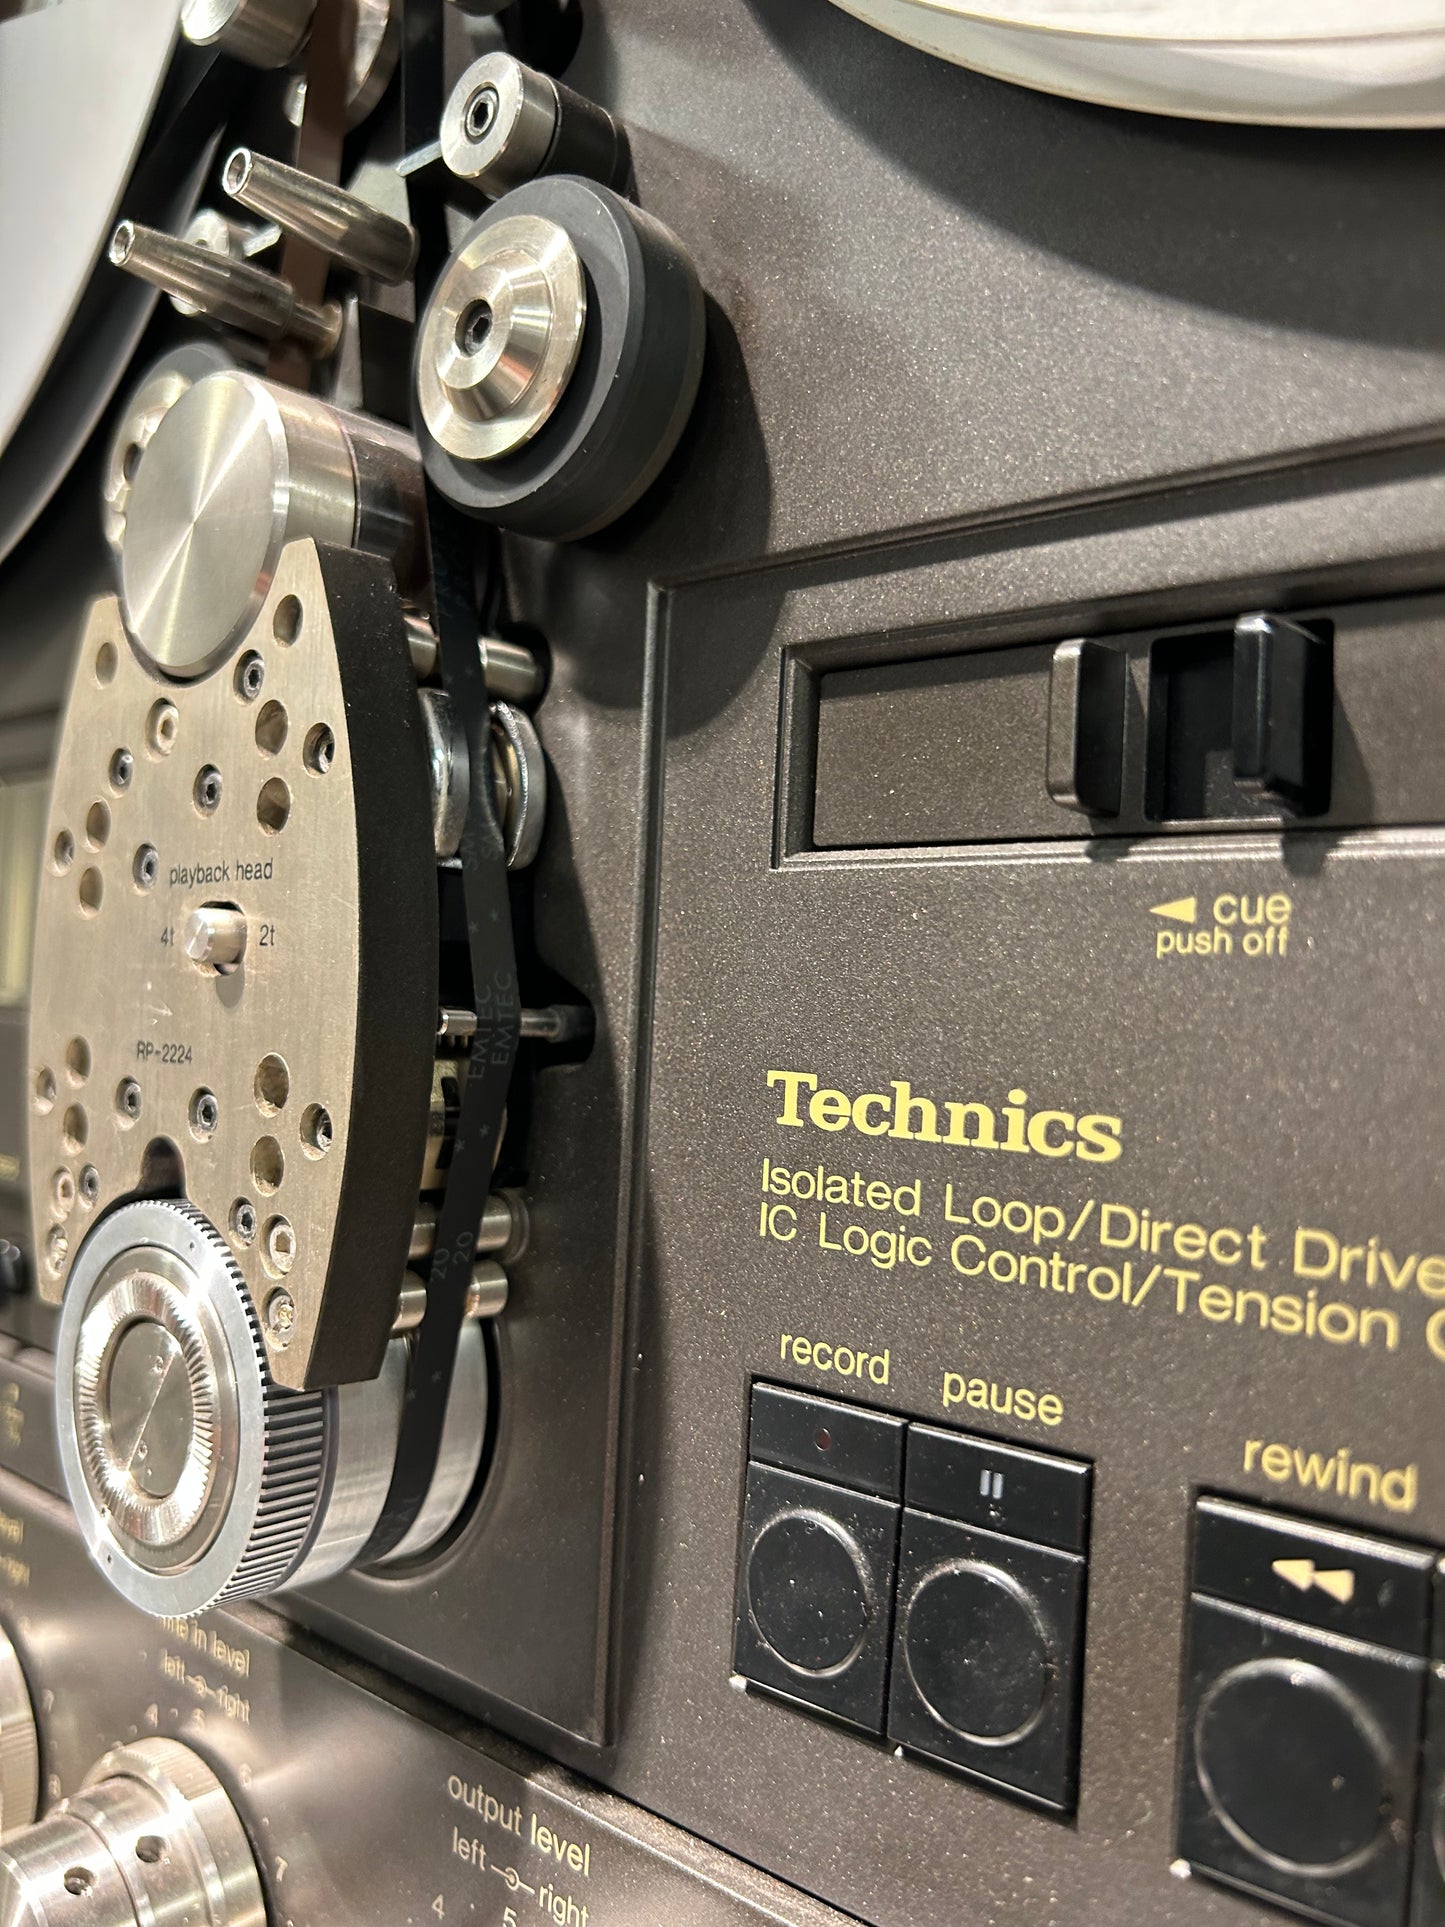 Technics RS 1500